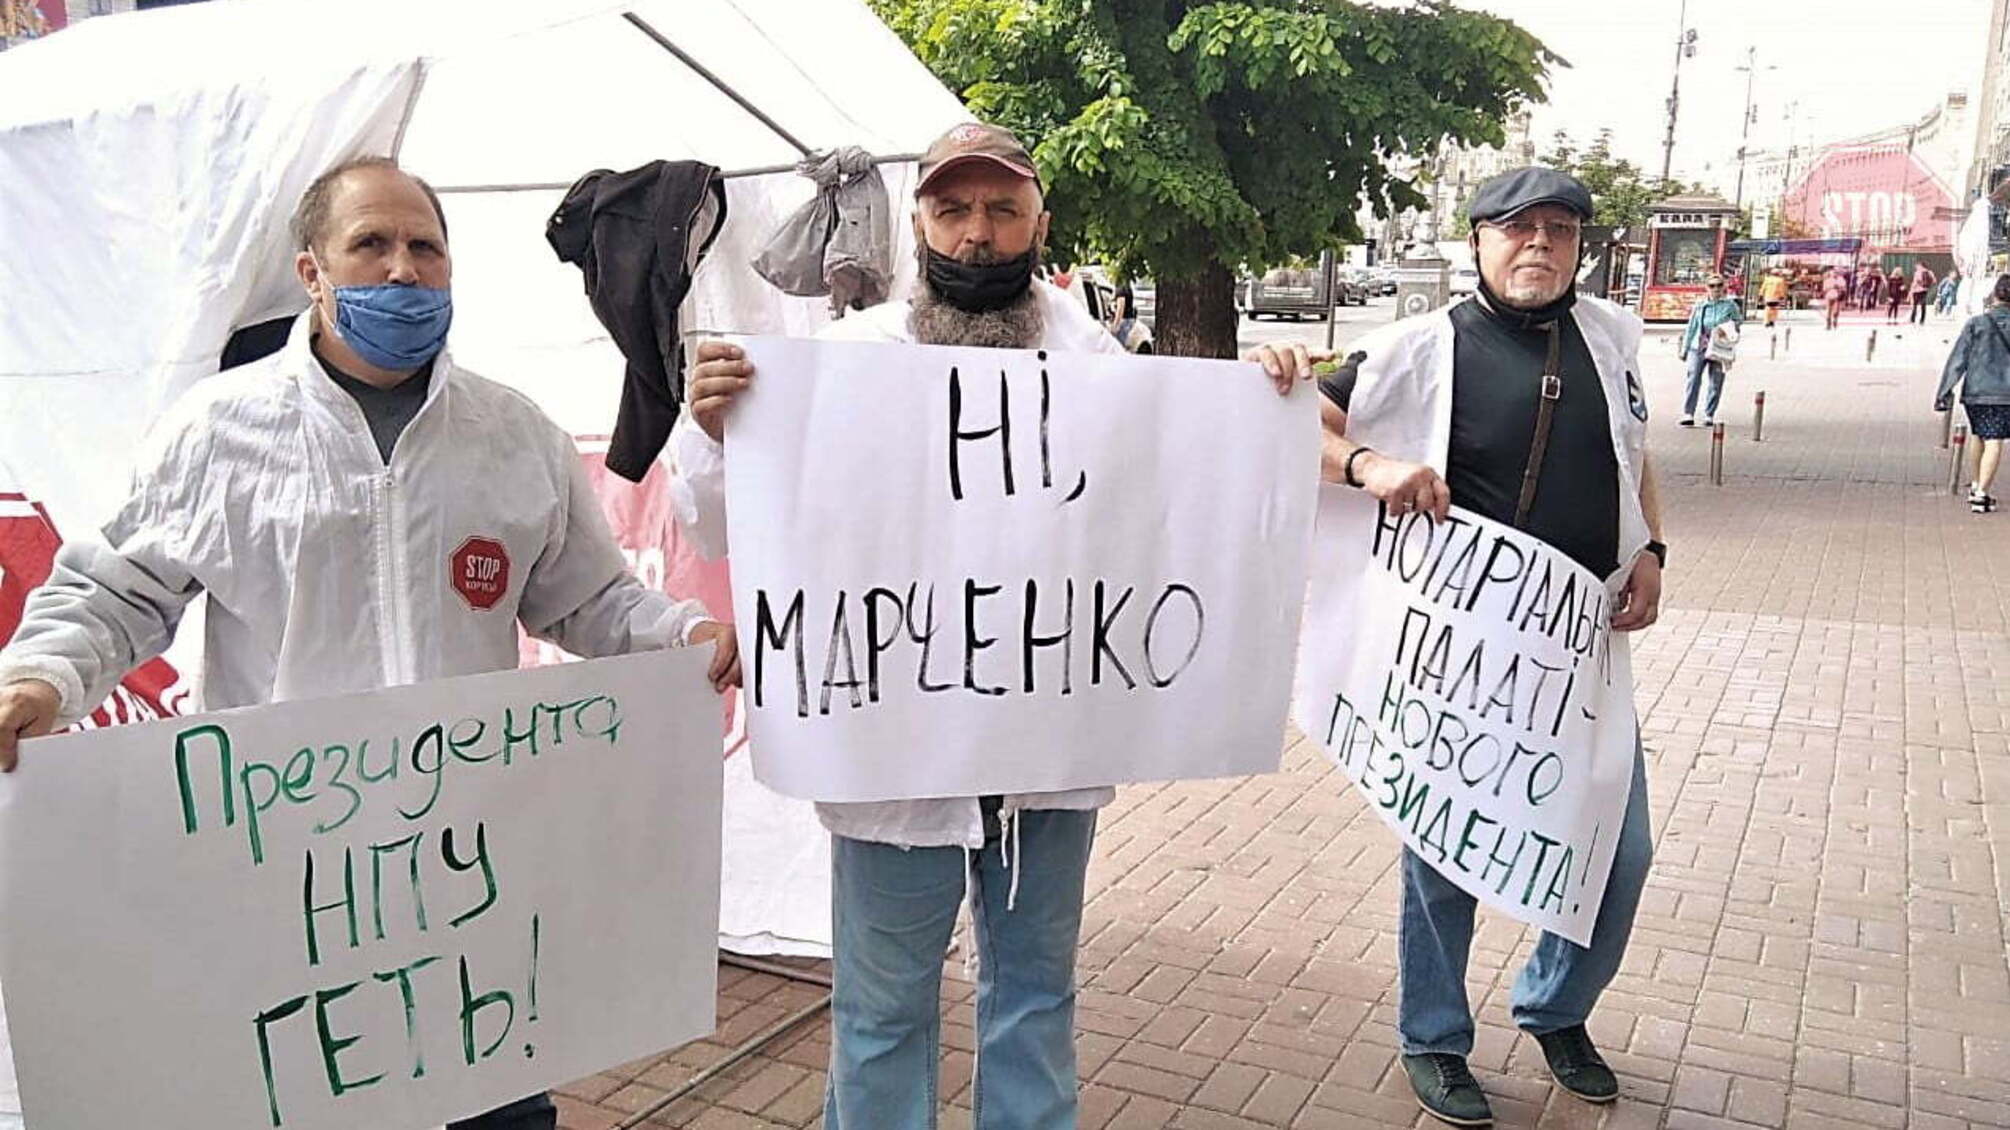 Прогуливает работу и получает высокую зарплату: под НПУ - протест против ее президента Марченко